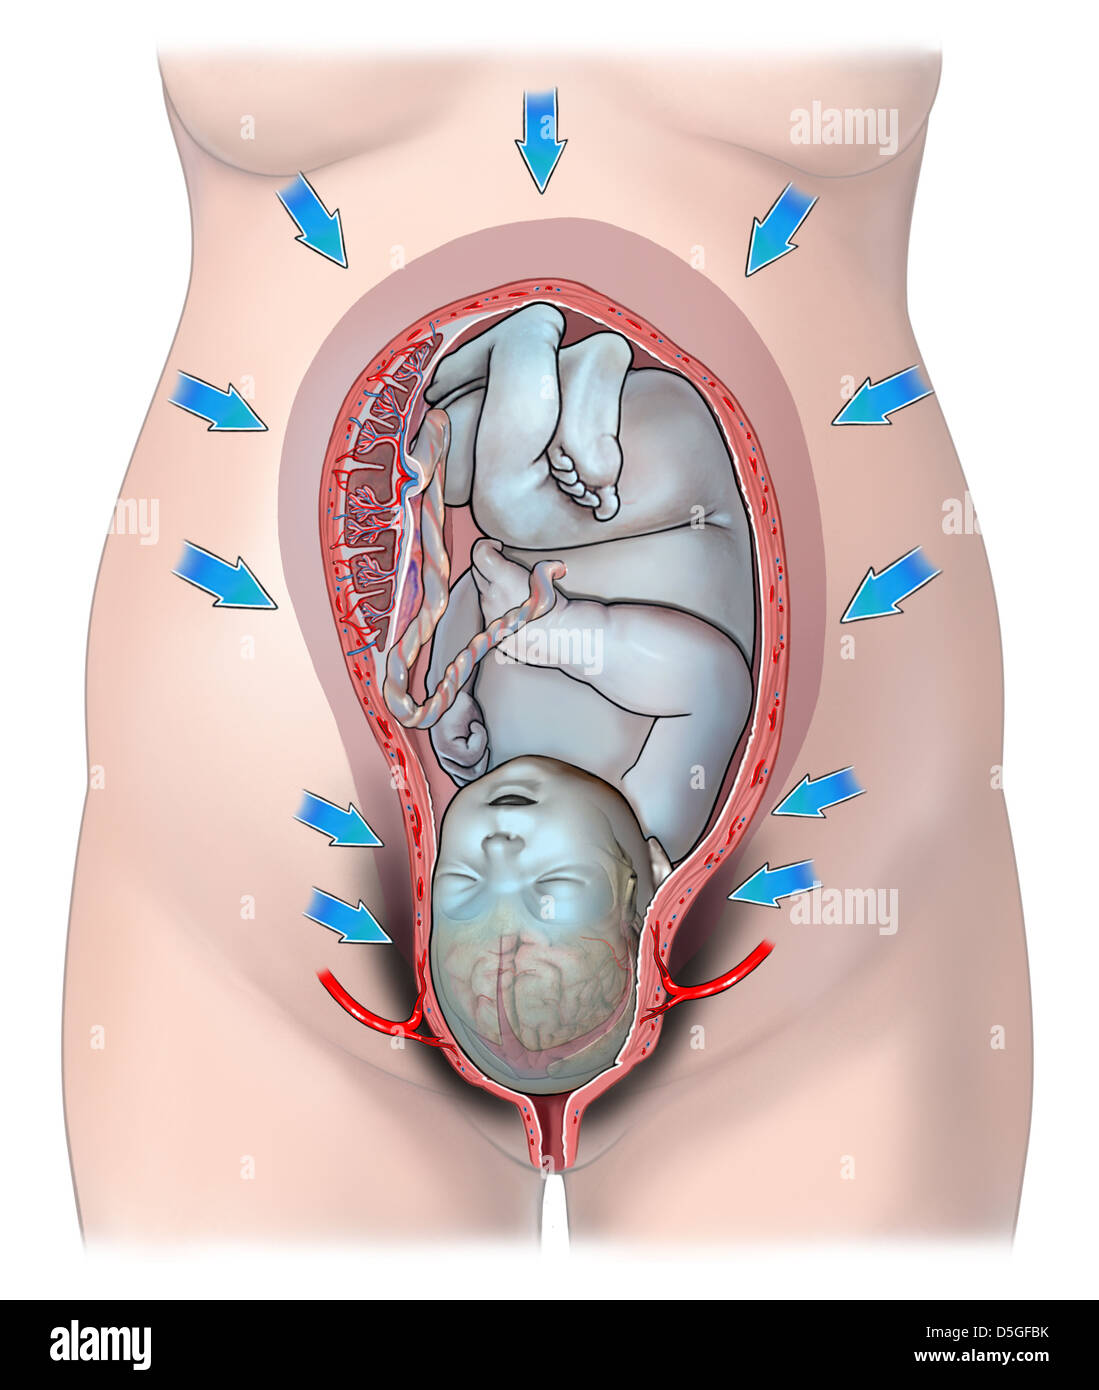 Contracciones uterinas fotografías e imágenes de alta resolución - Alamy